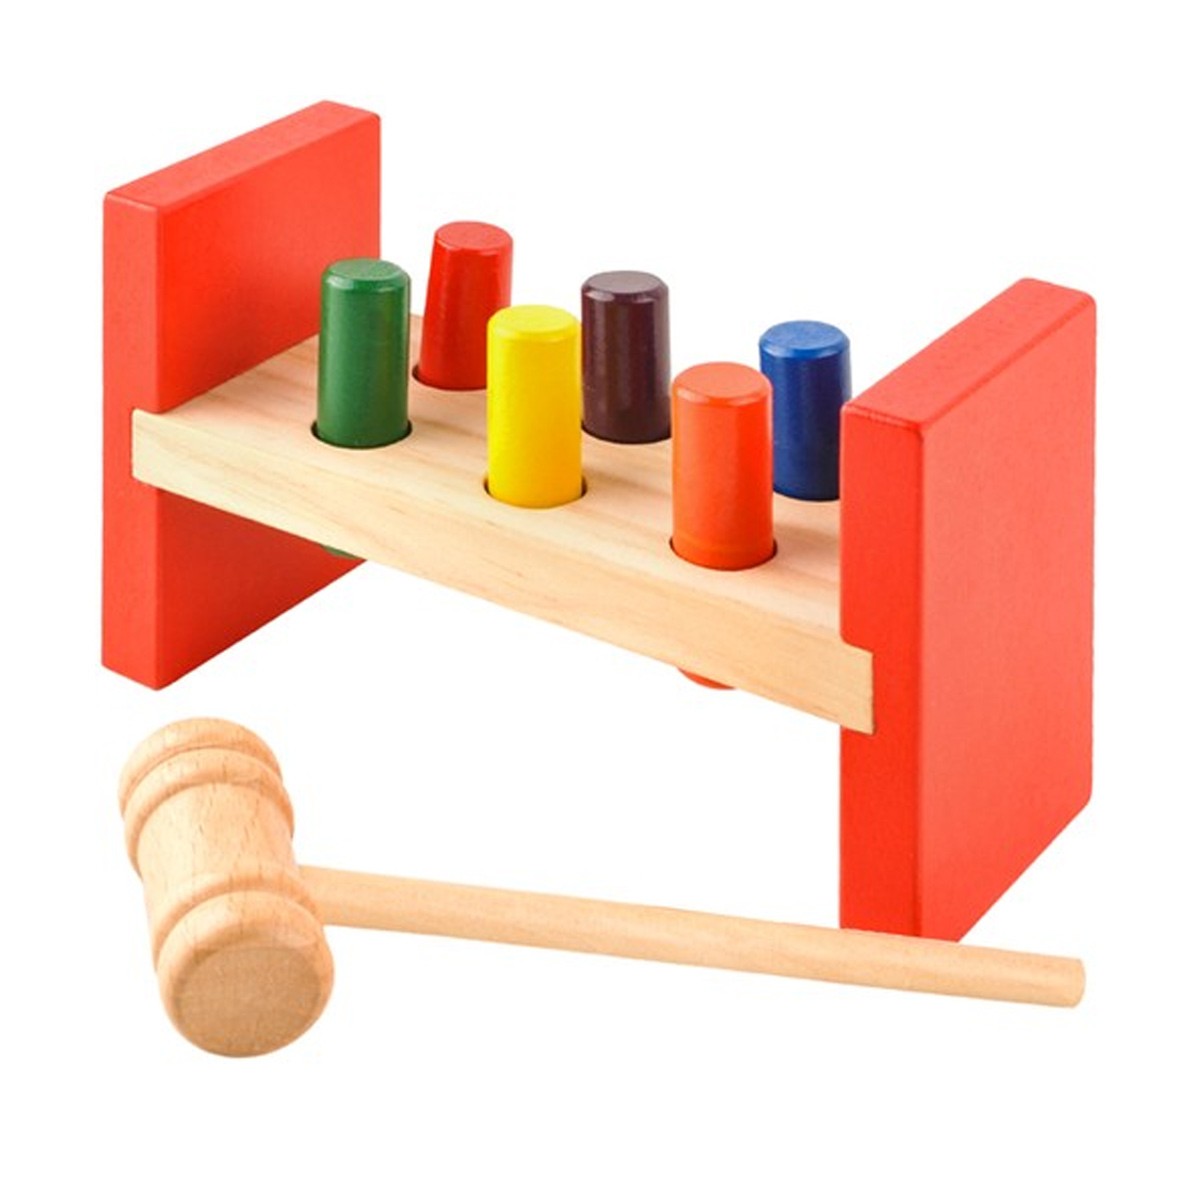 https://www.monmobilierdesign.fr/11632/hammer-banc-marteler-jouet-montessori-en-bois.jpg